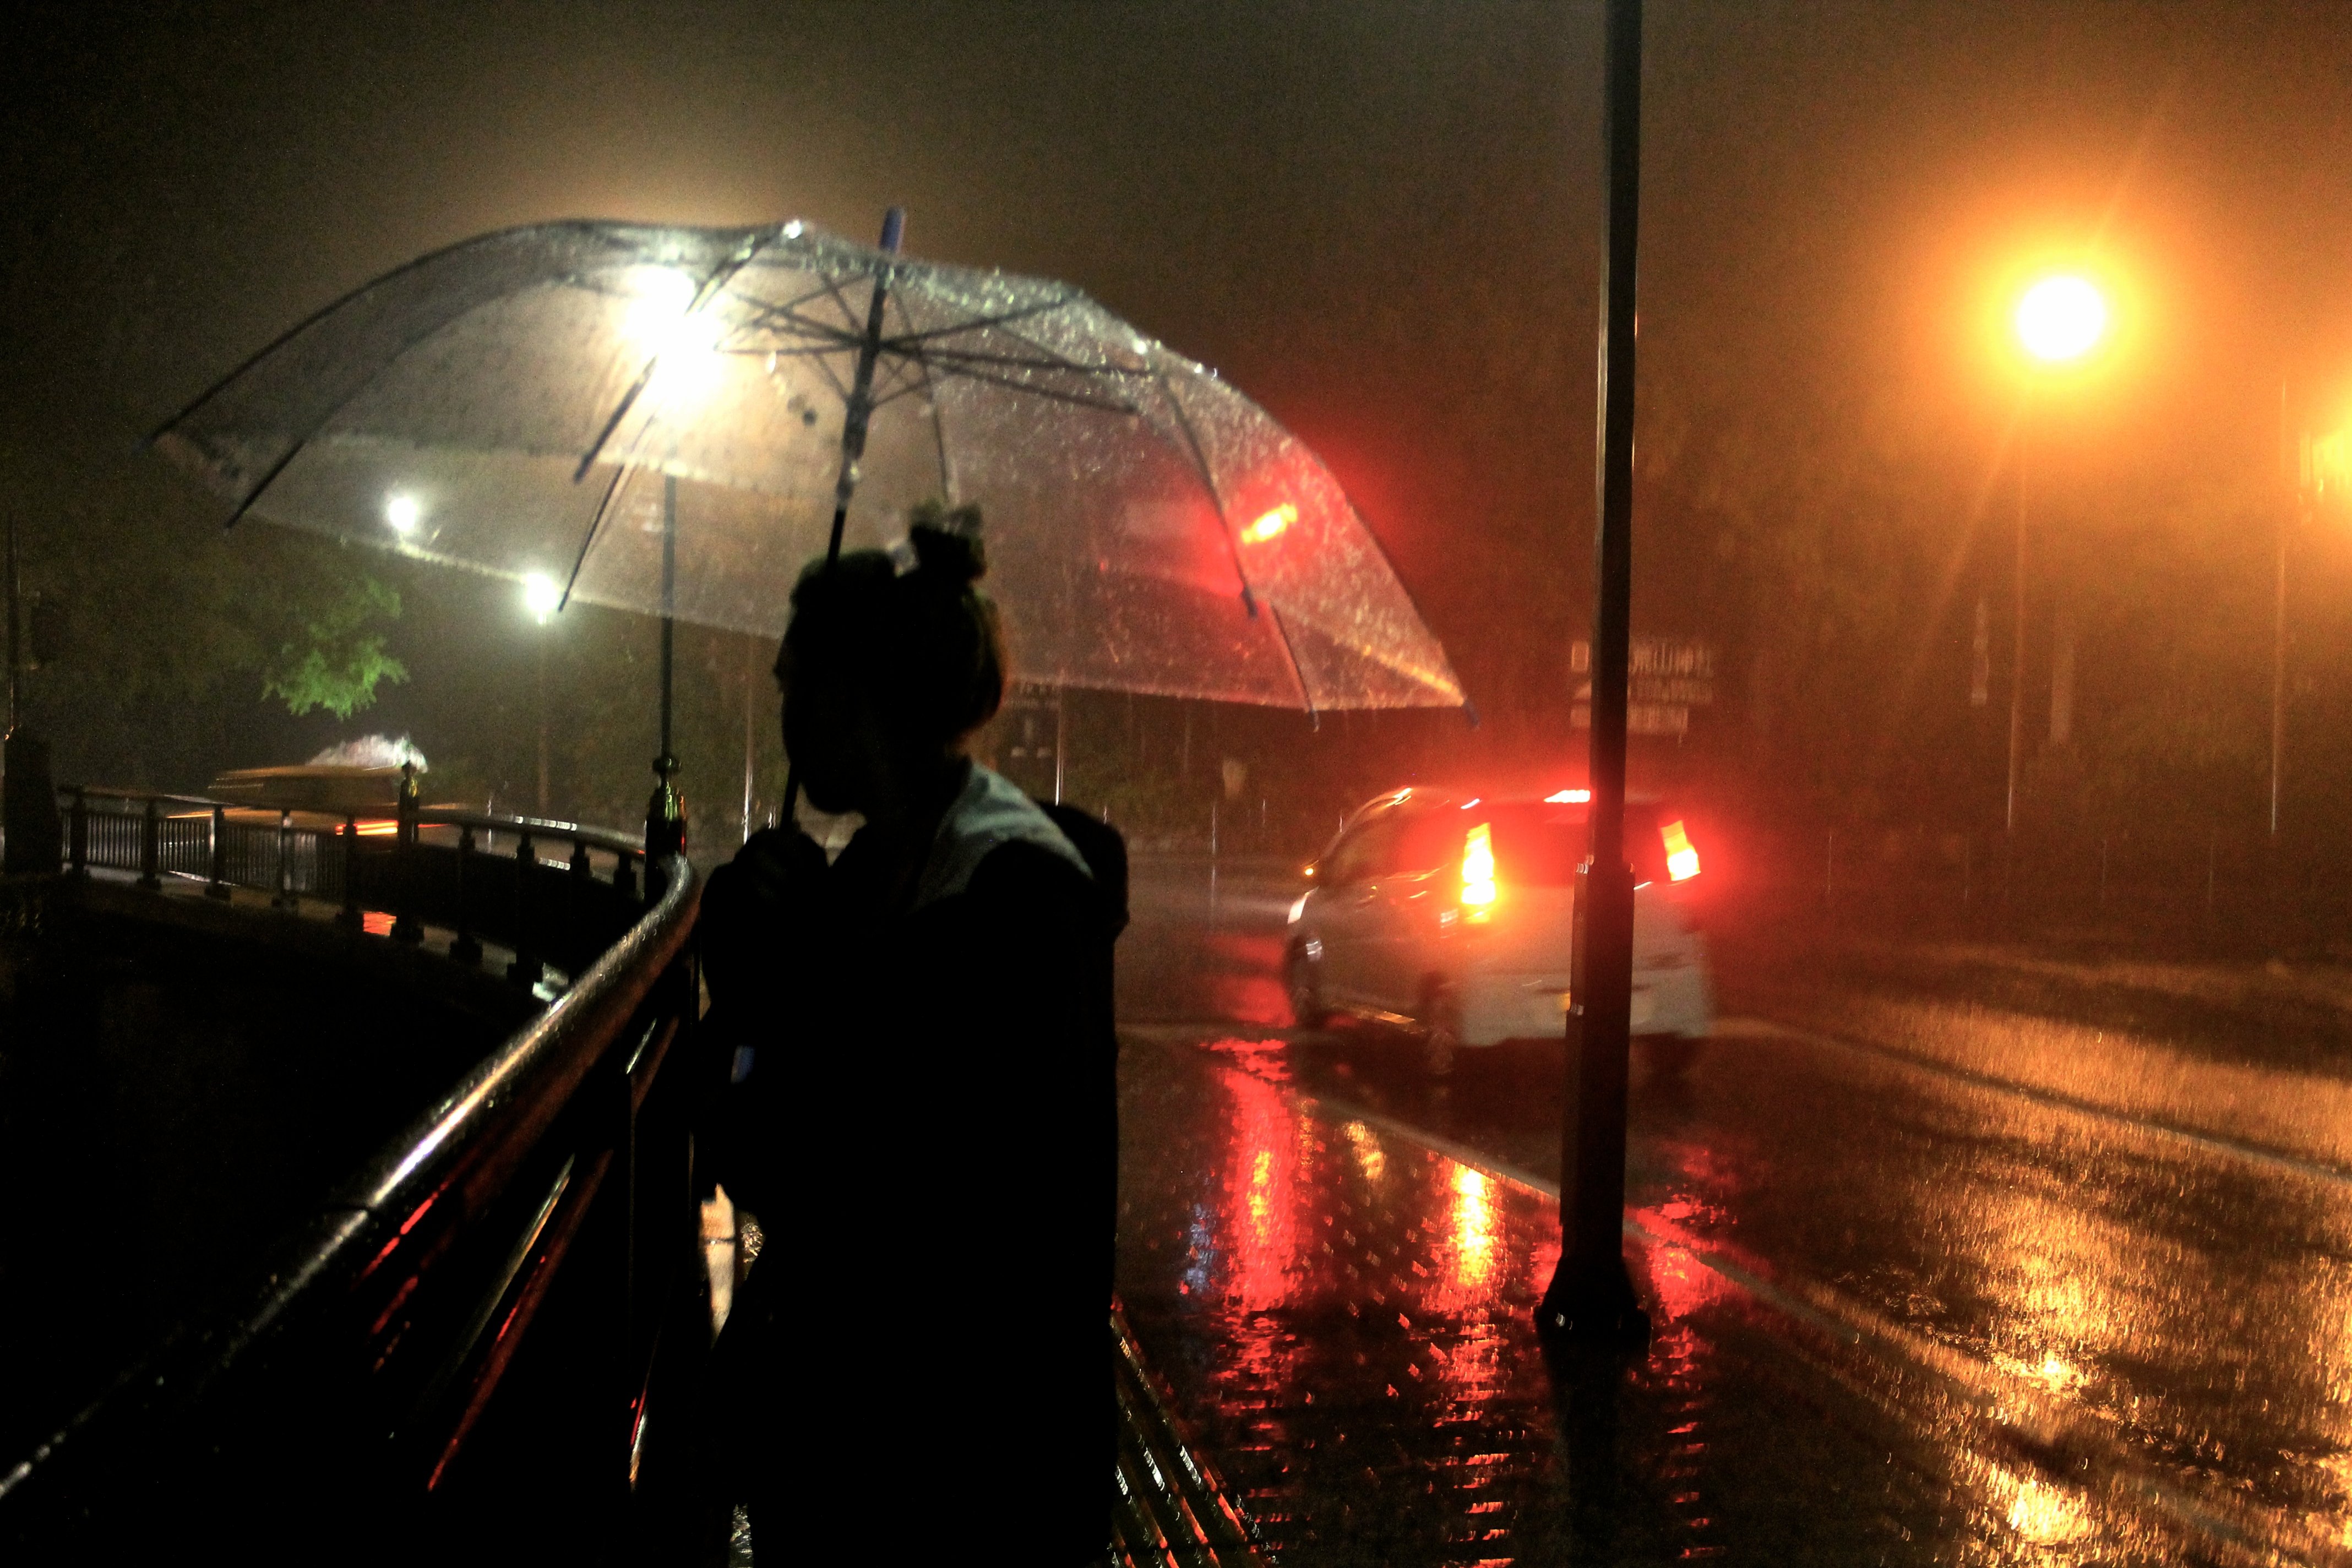 Погода вечером на улице. Дождь ночью. Человек под зонтом. Город ночью под дождем. "Дождливый вечер".